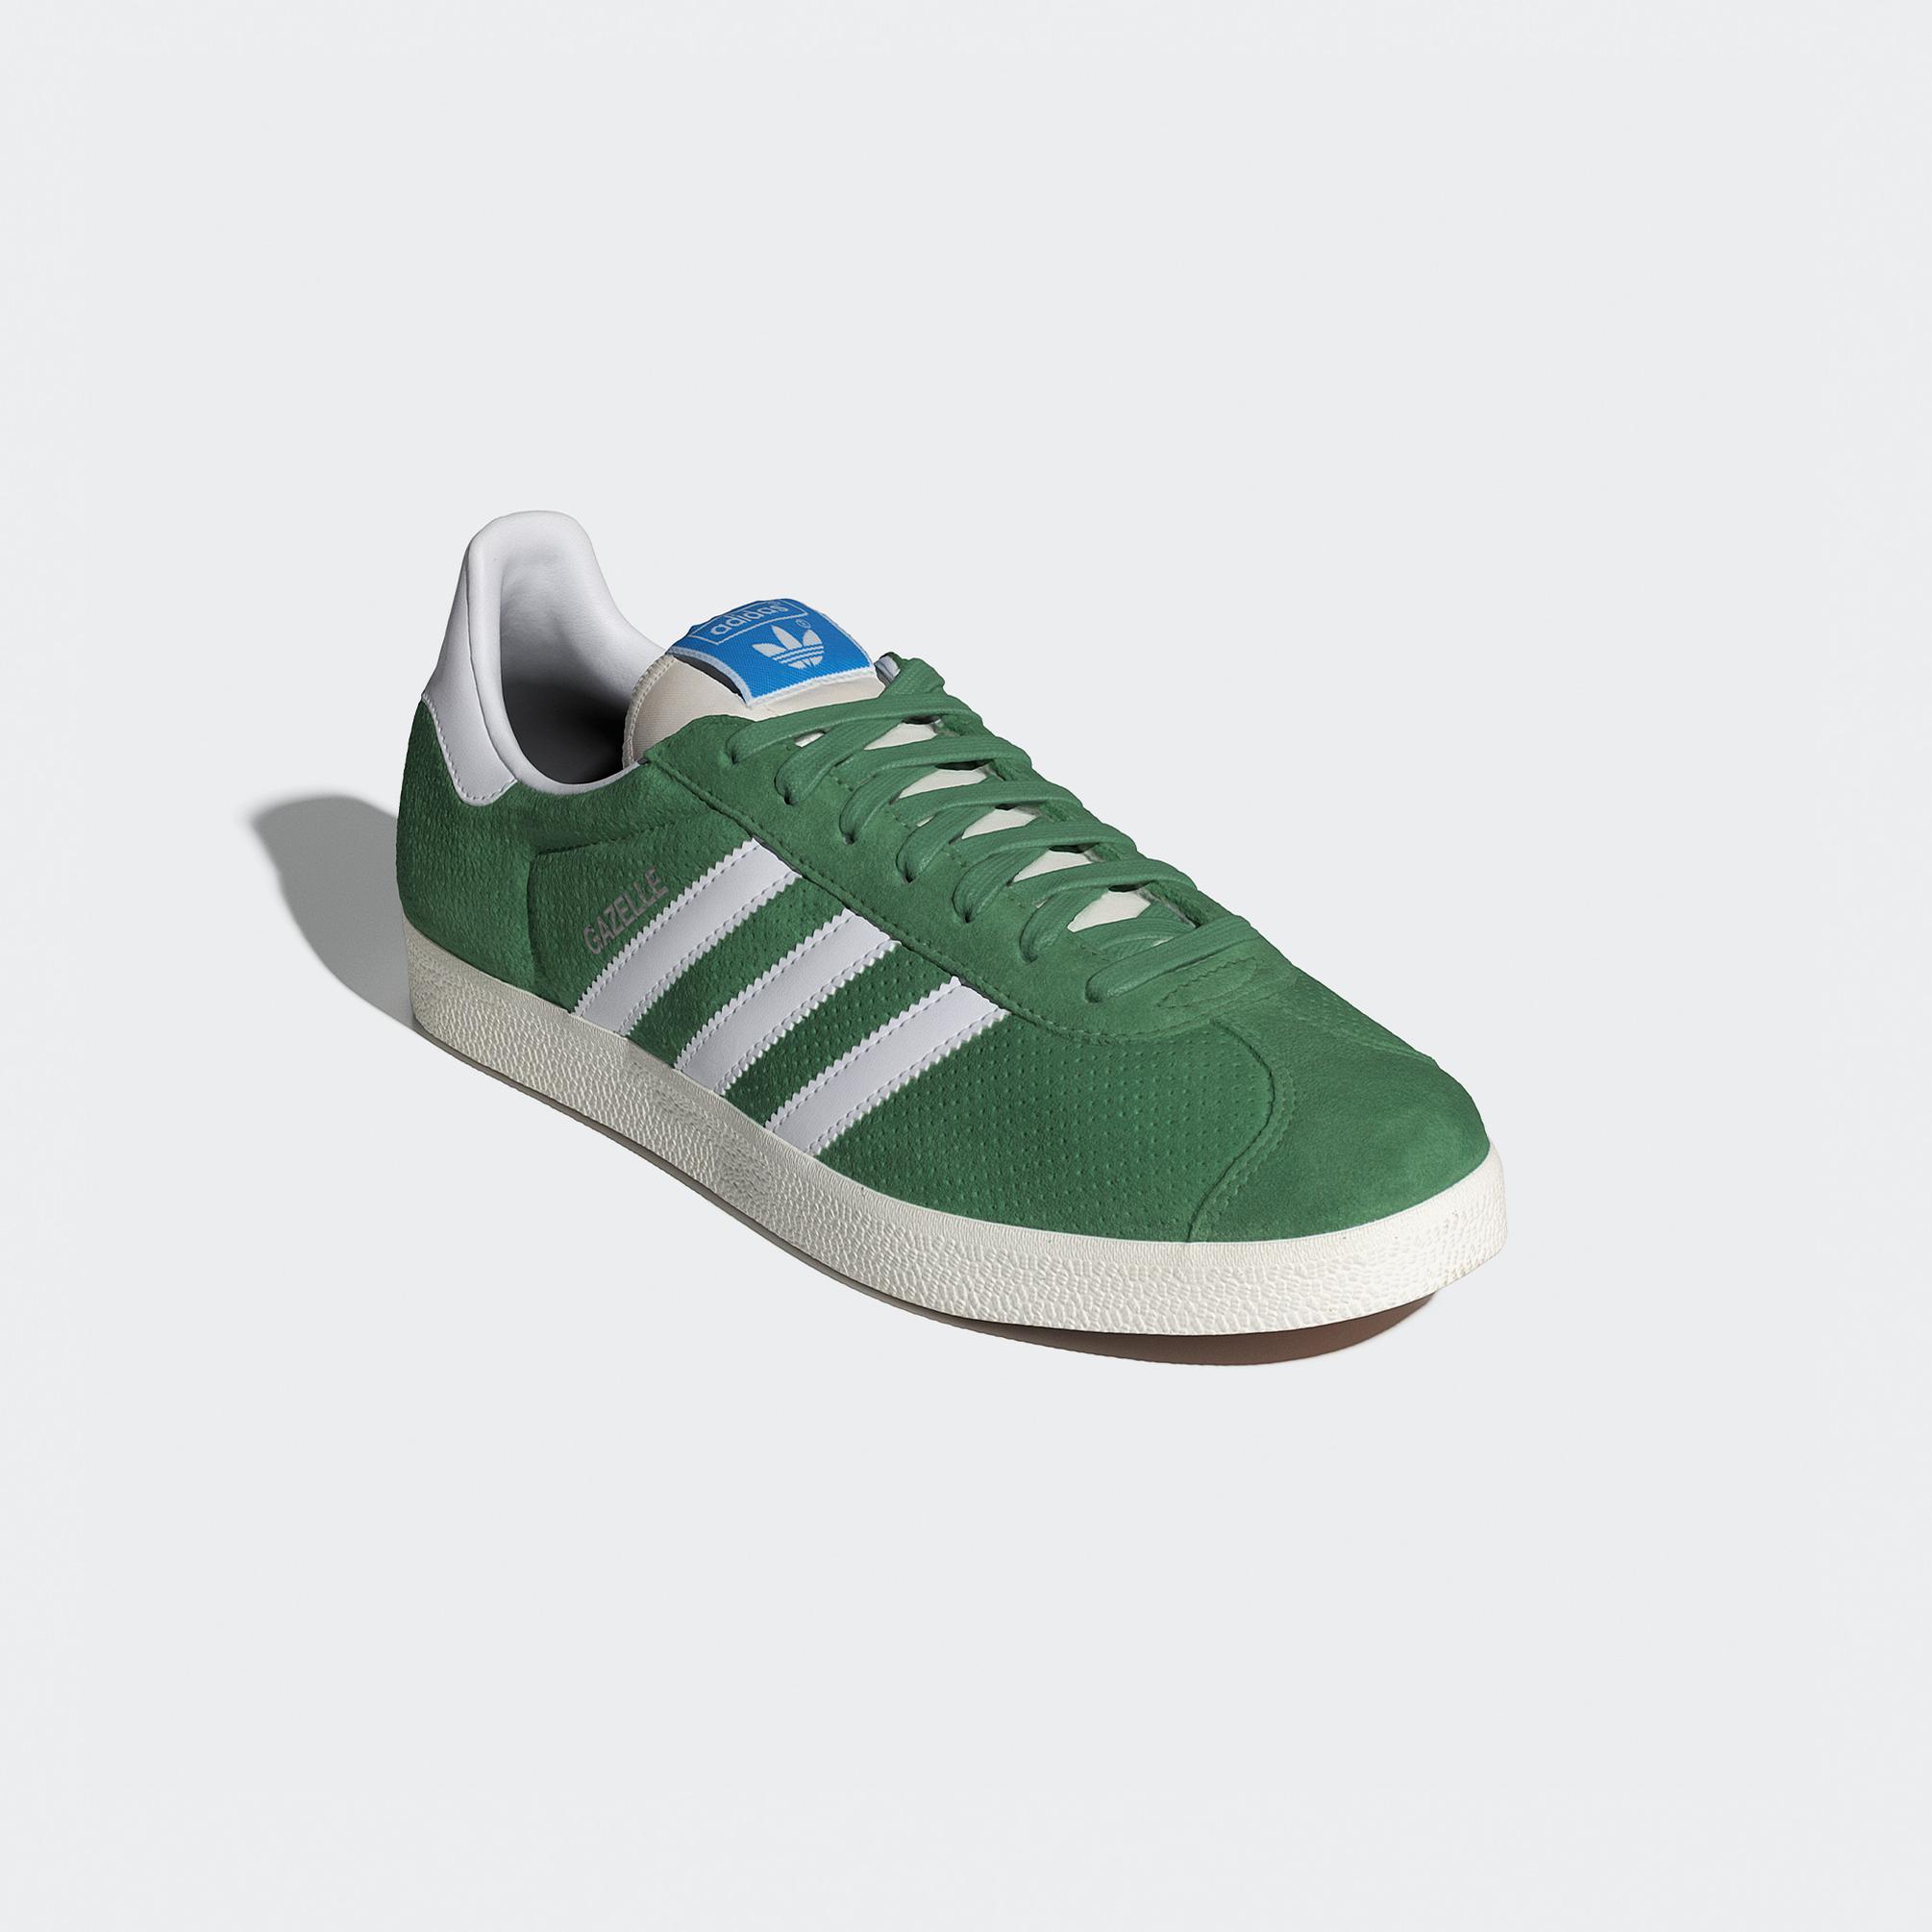  adidas Originals Gazelle Unisex Yeşil Spor Ayakkabı